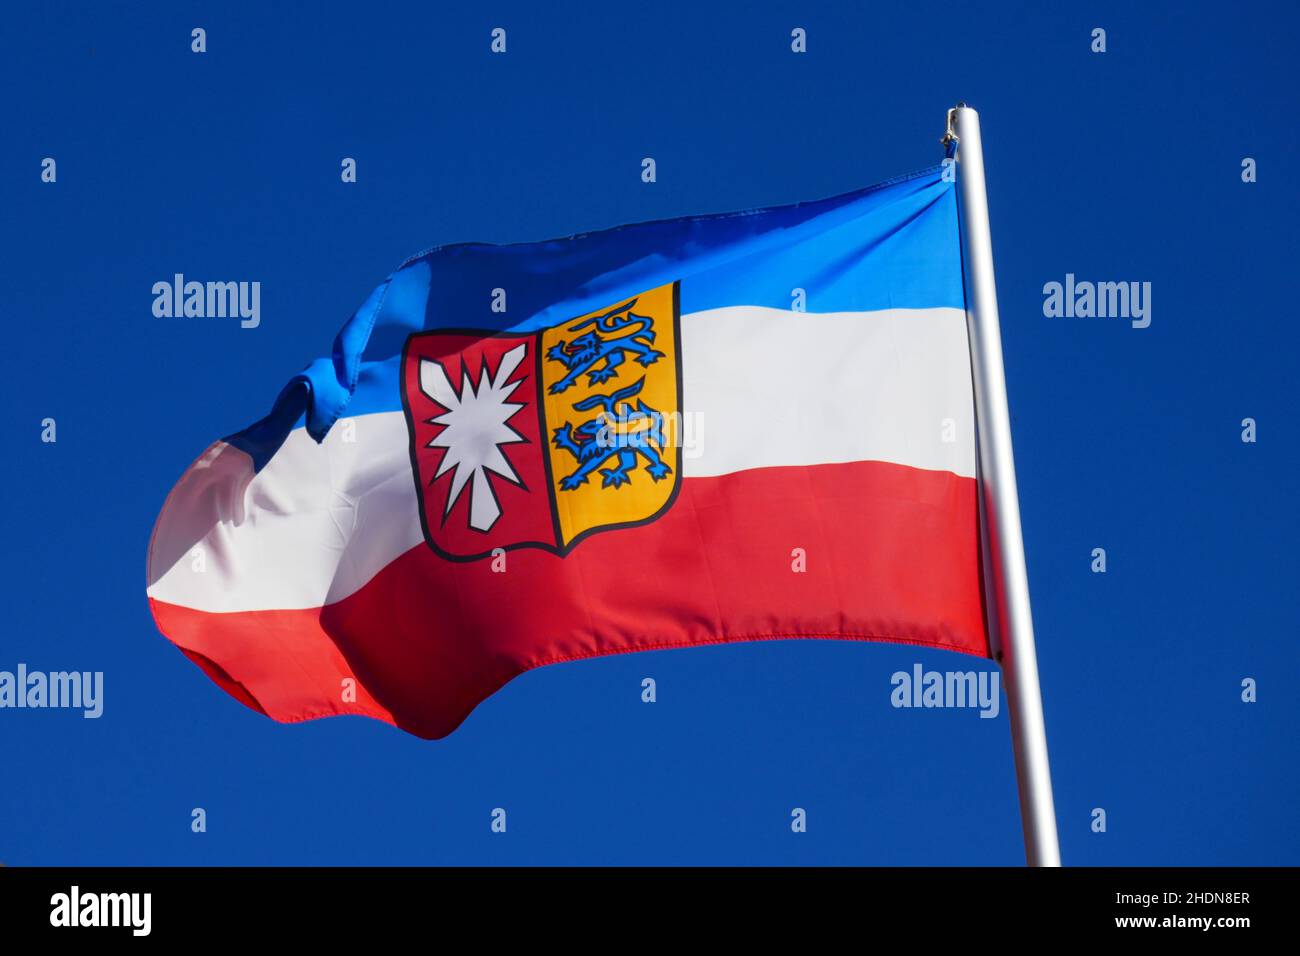 bandera del país, schleswig holstein, banderas del país Foto de stock